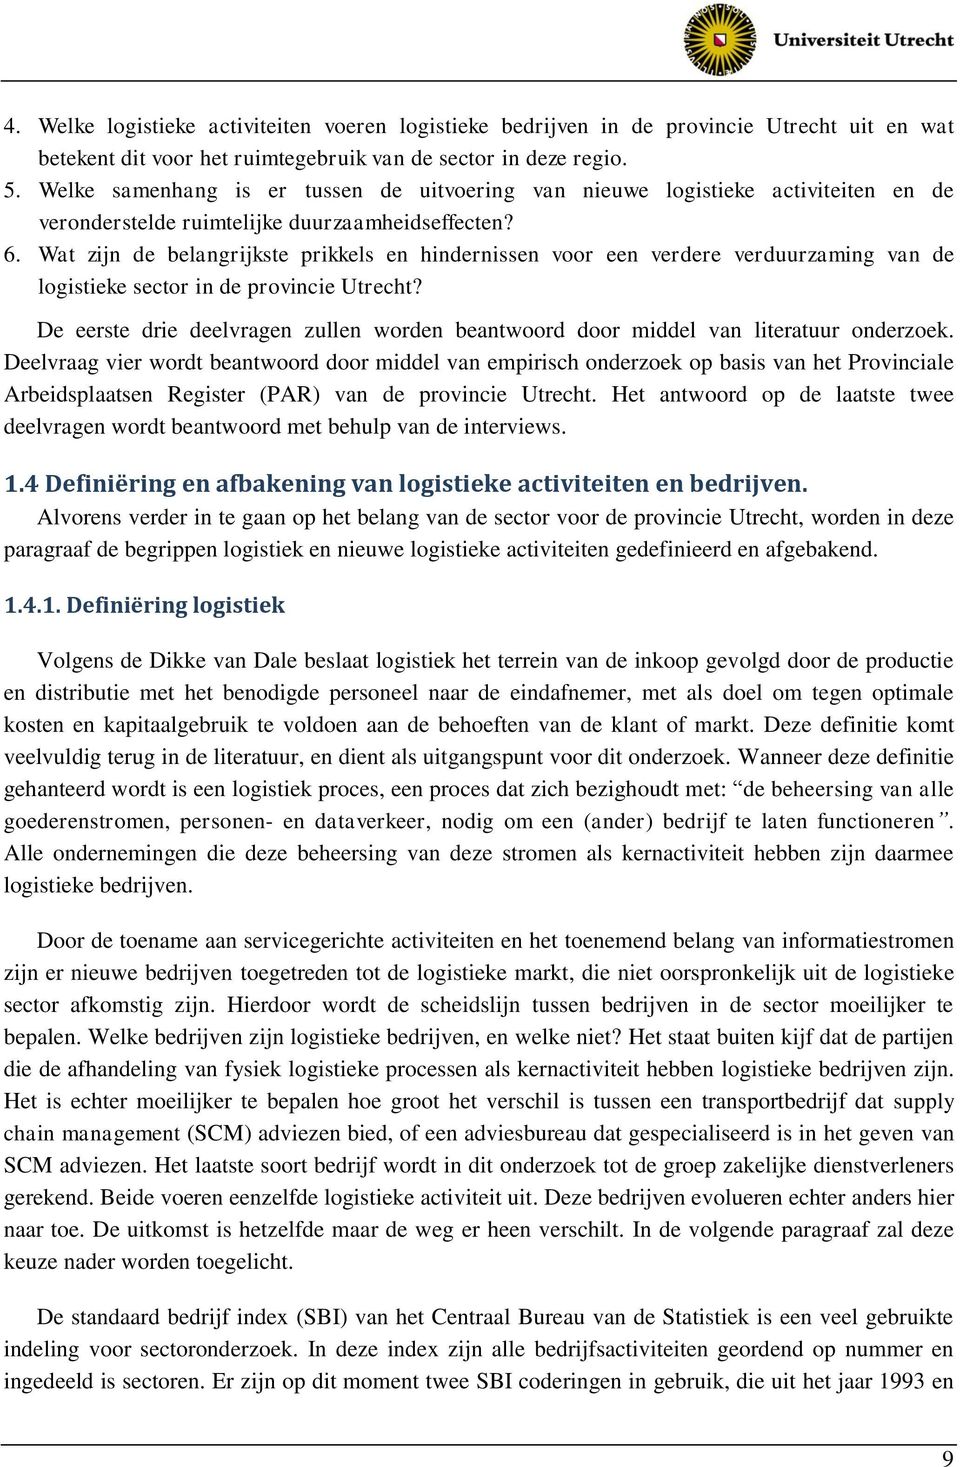 Wat zijn de belangrijkste prikkels en hindernissen voor een verdere verduurzaming van de logistieke sector in de provincie Utrecht?